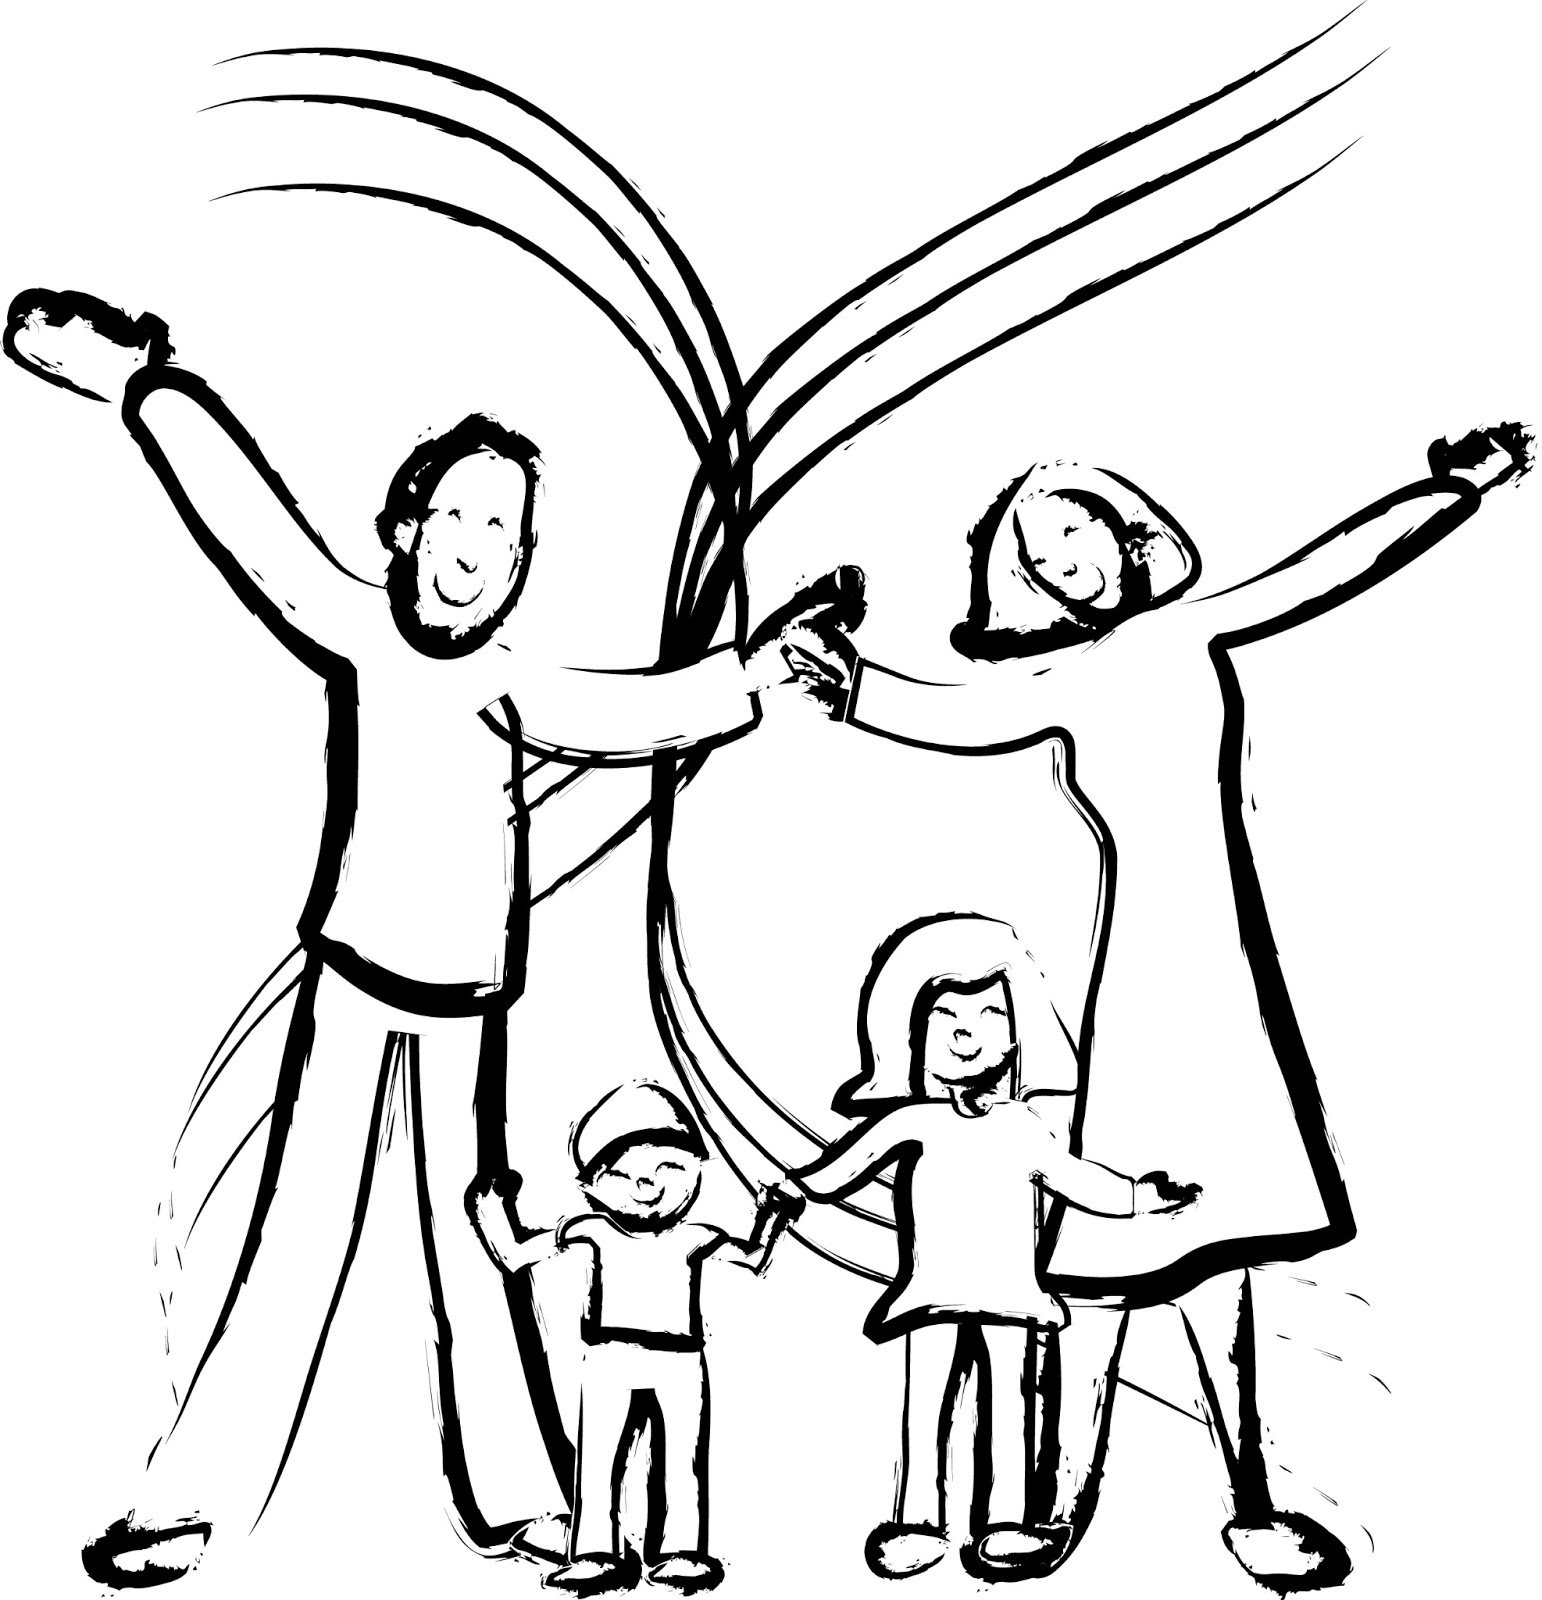 Рисунок связанный с семьей